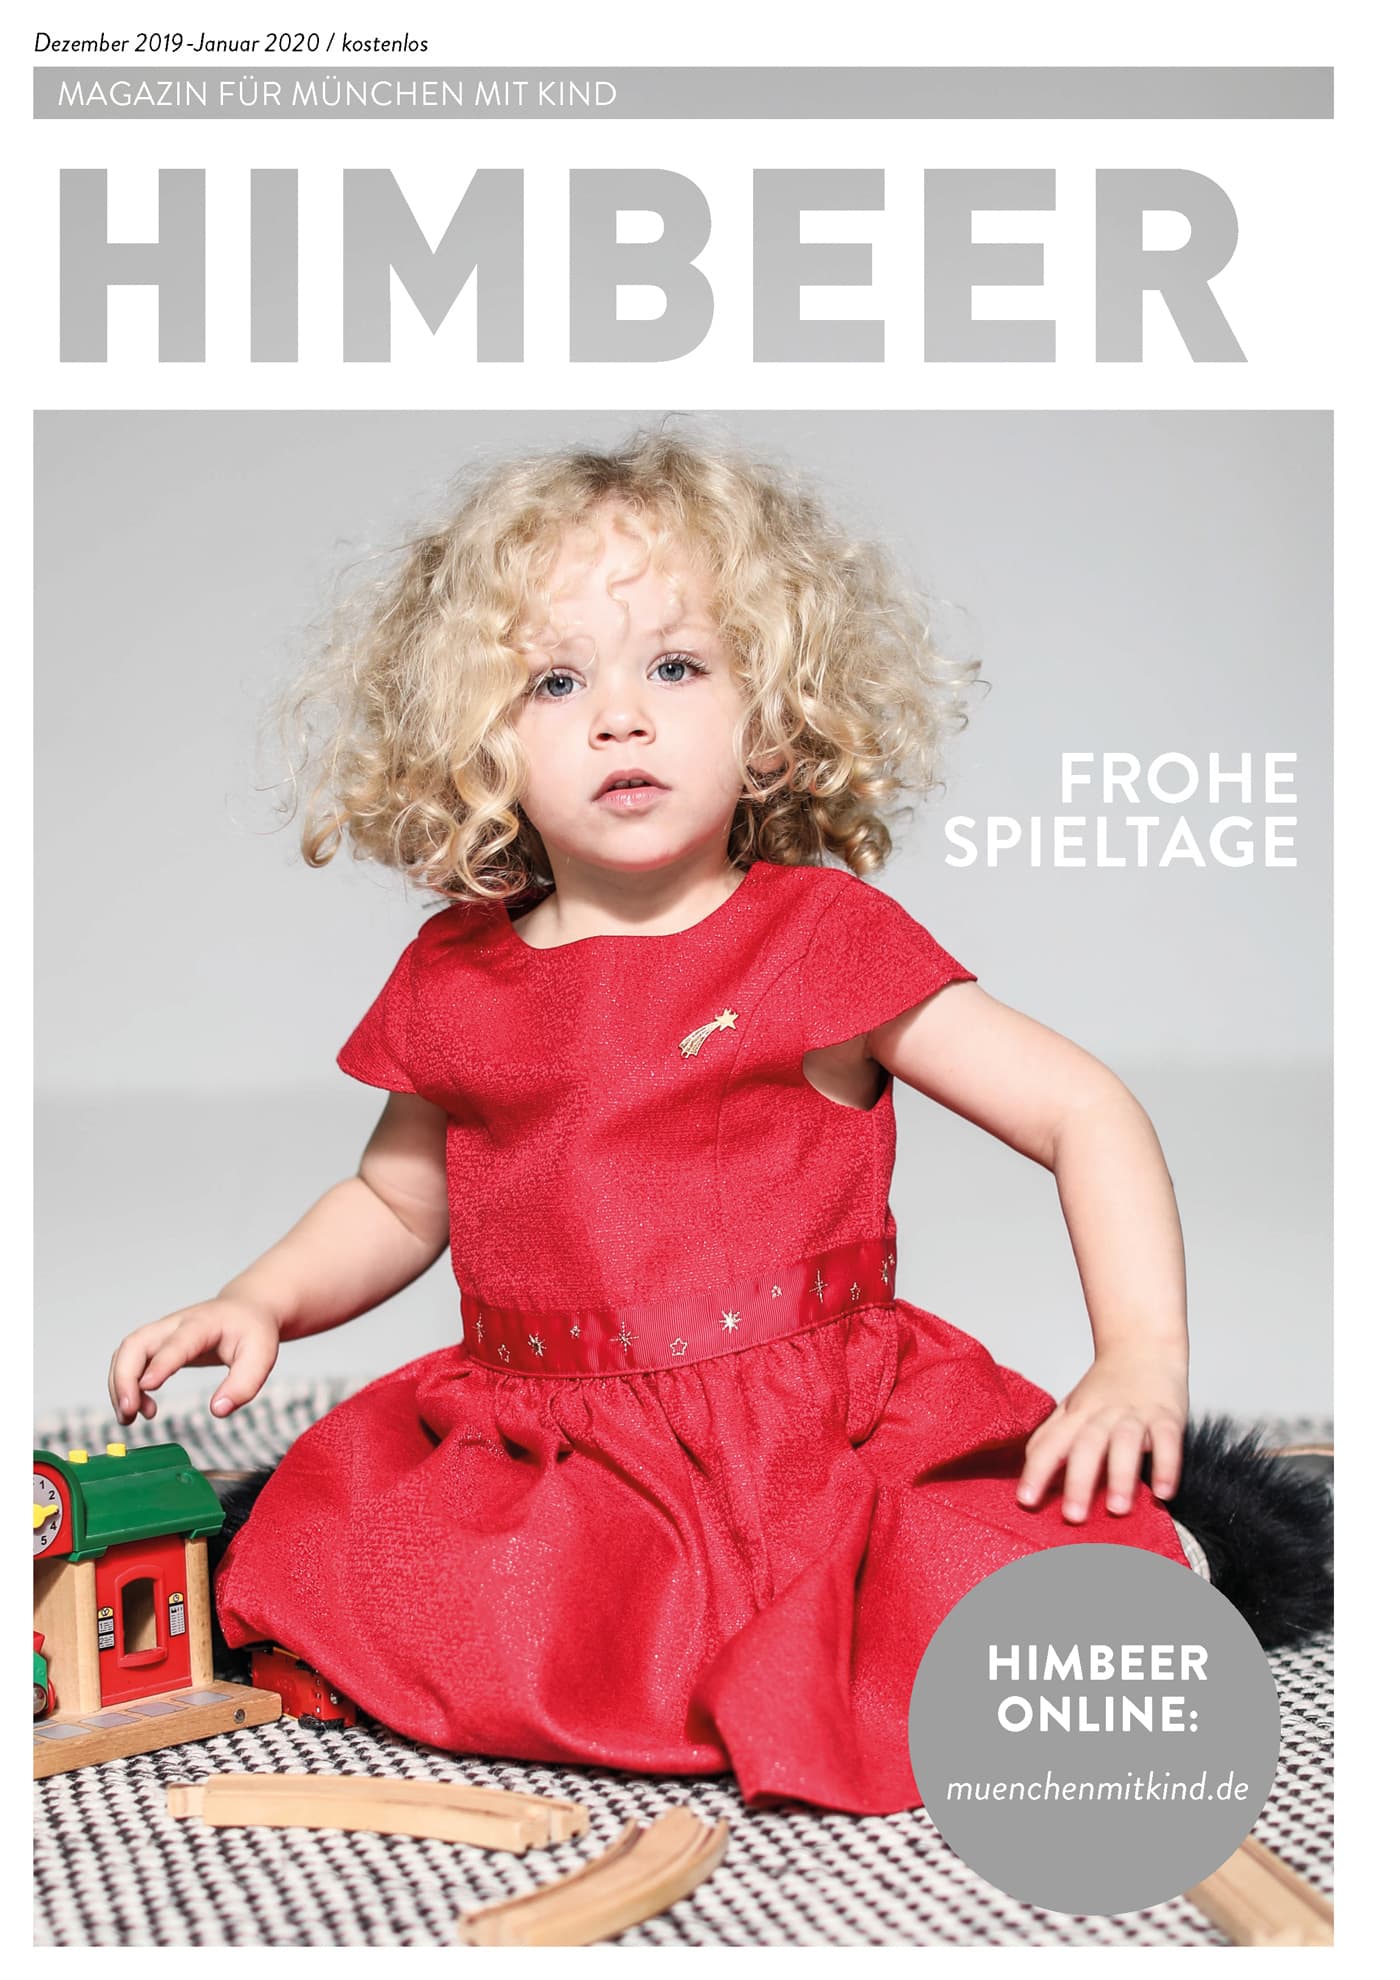 Das Münchner Familienmagazin: HIMBEER Magazin für München mit Kind Dezember 2019-Januar 2020: Frohe Spieltage // HIMBEER